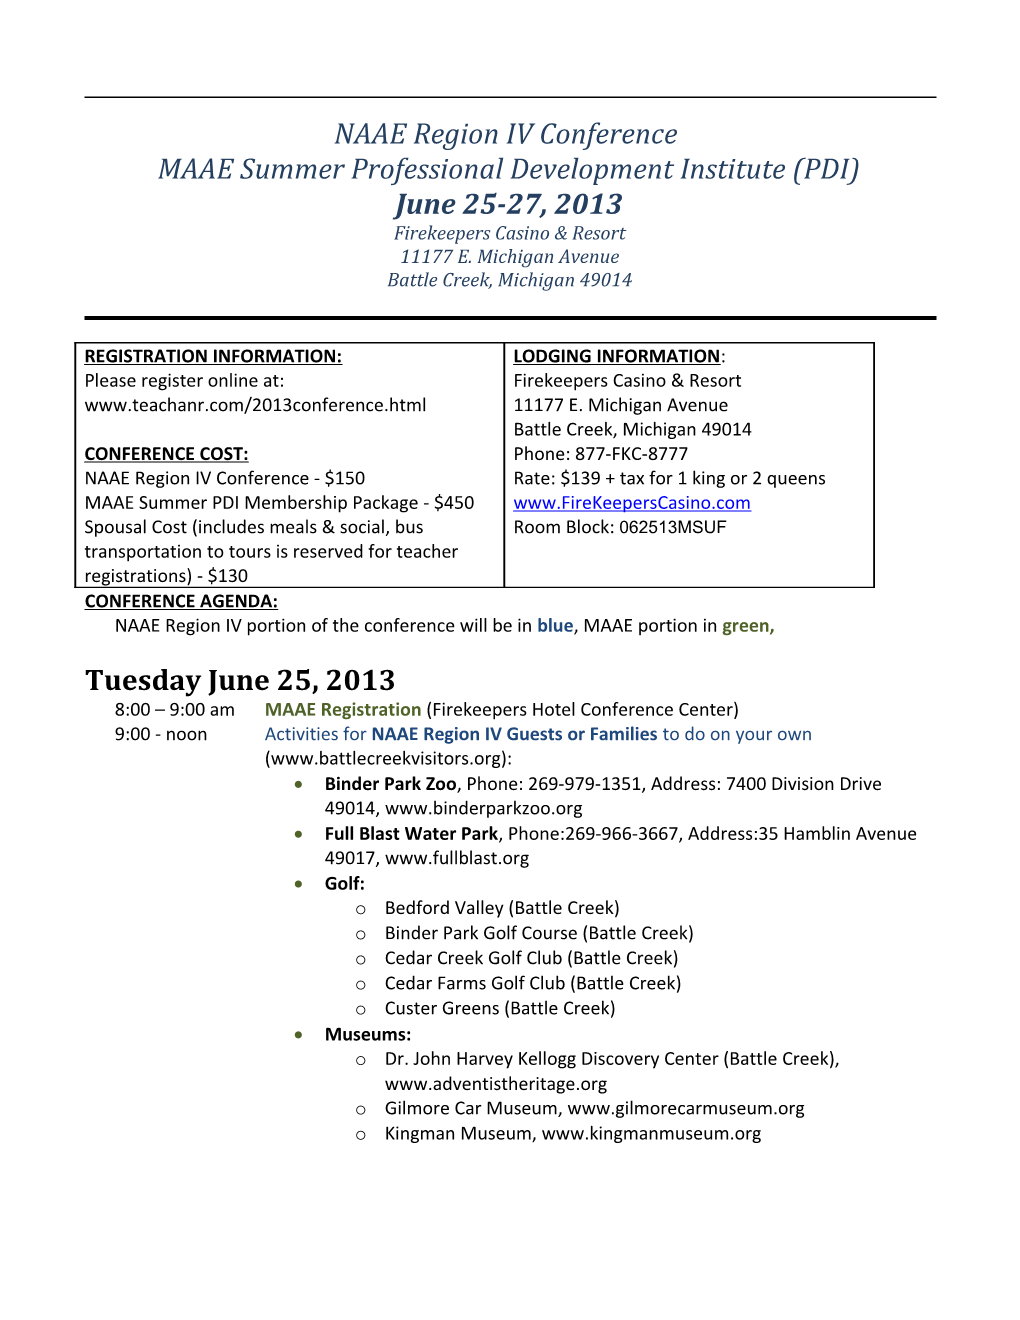 Planning Agenda for NAAE Region IV/Summer PDI